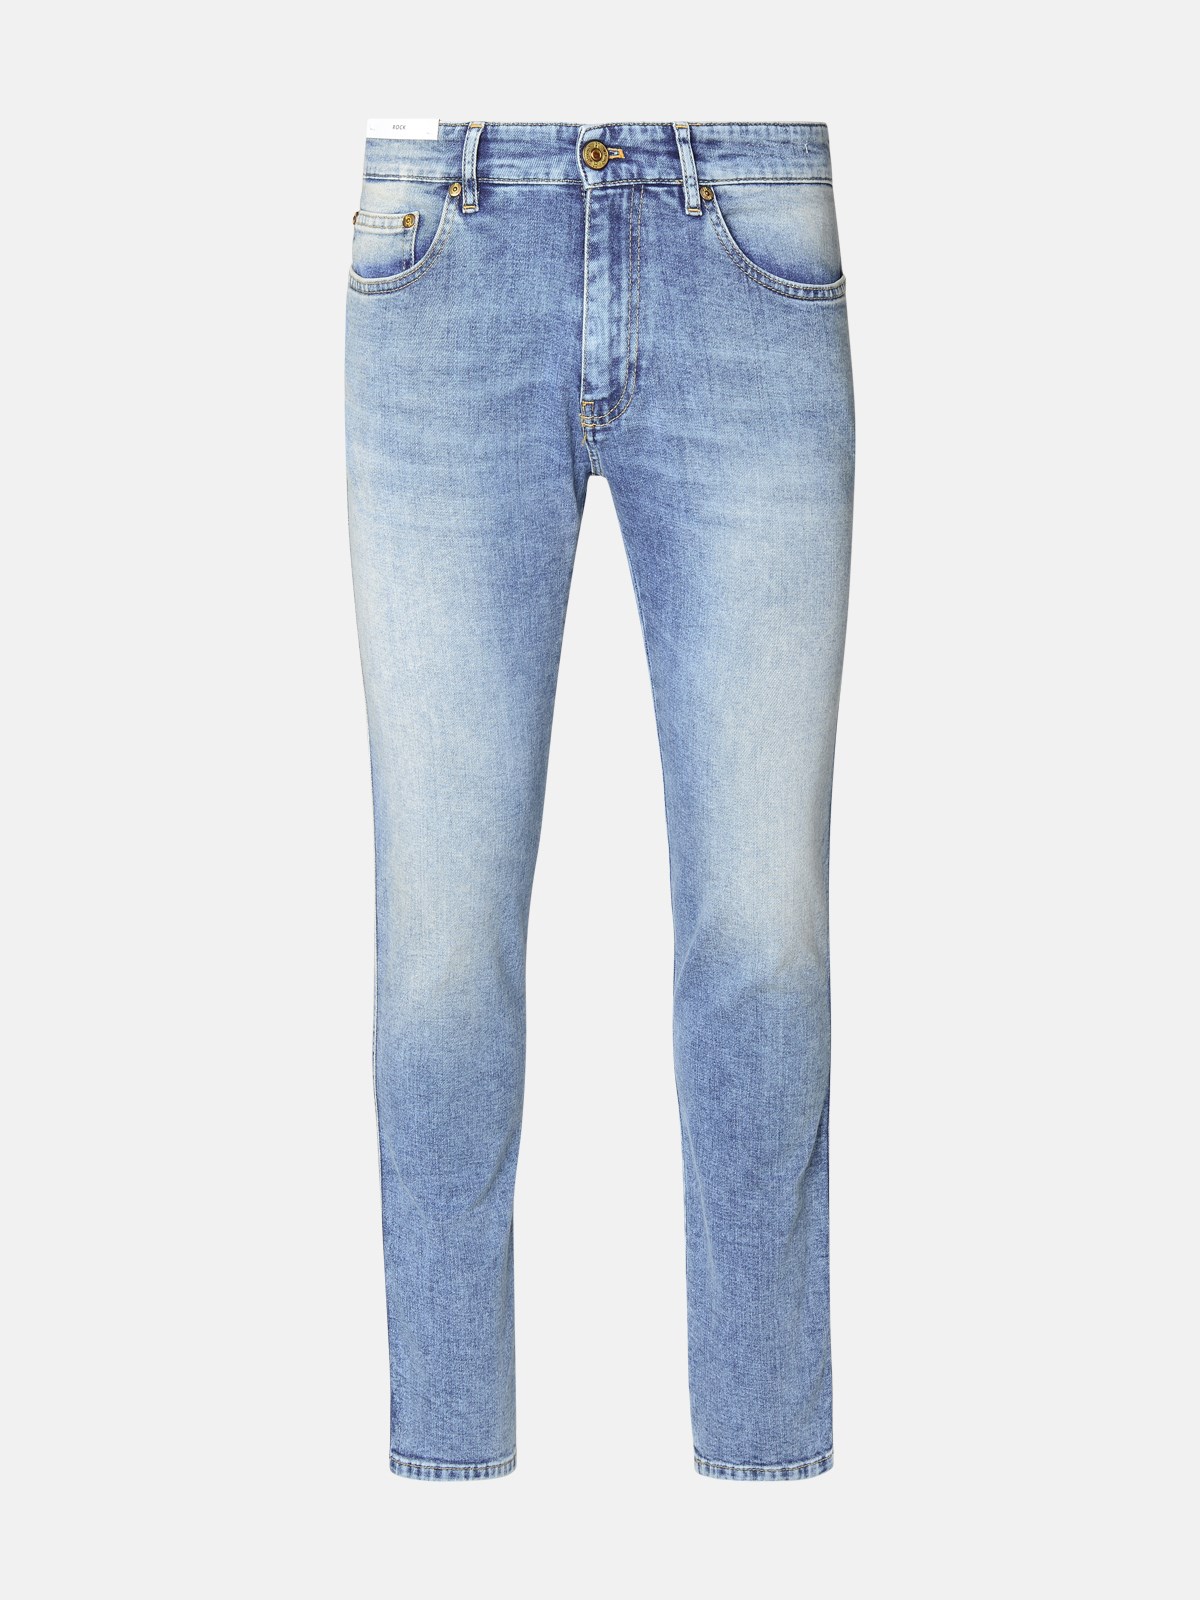 Shop Pt Torino Denim 'rock' Blue Cotton Blend Jeans